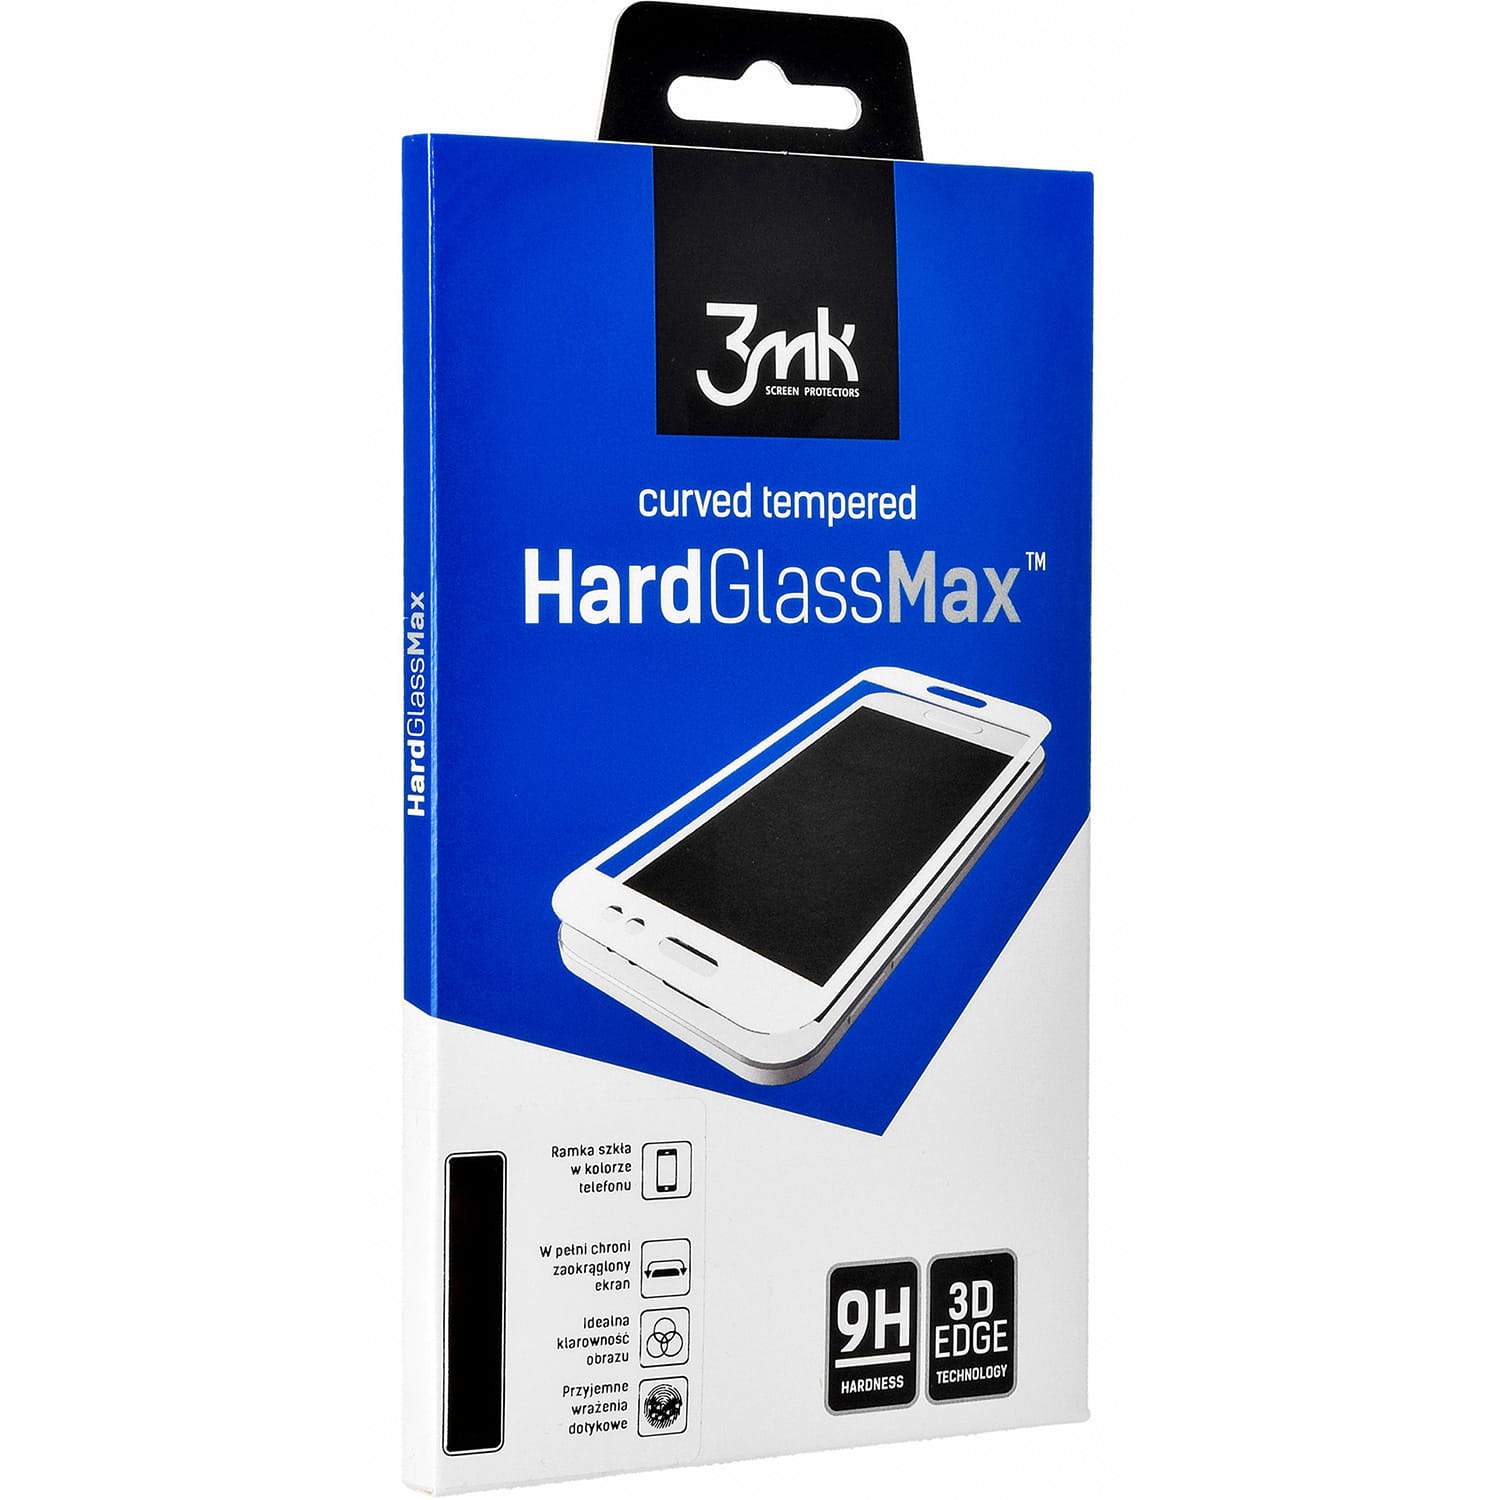 Gehärtetes Glas 3mk HardGlass Max FP Galaxy Note 10 Plus schwarzer Rahmen - Guerteltier